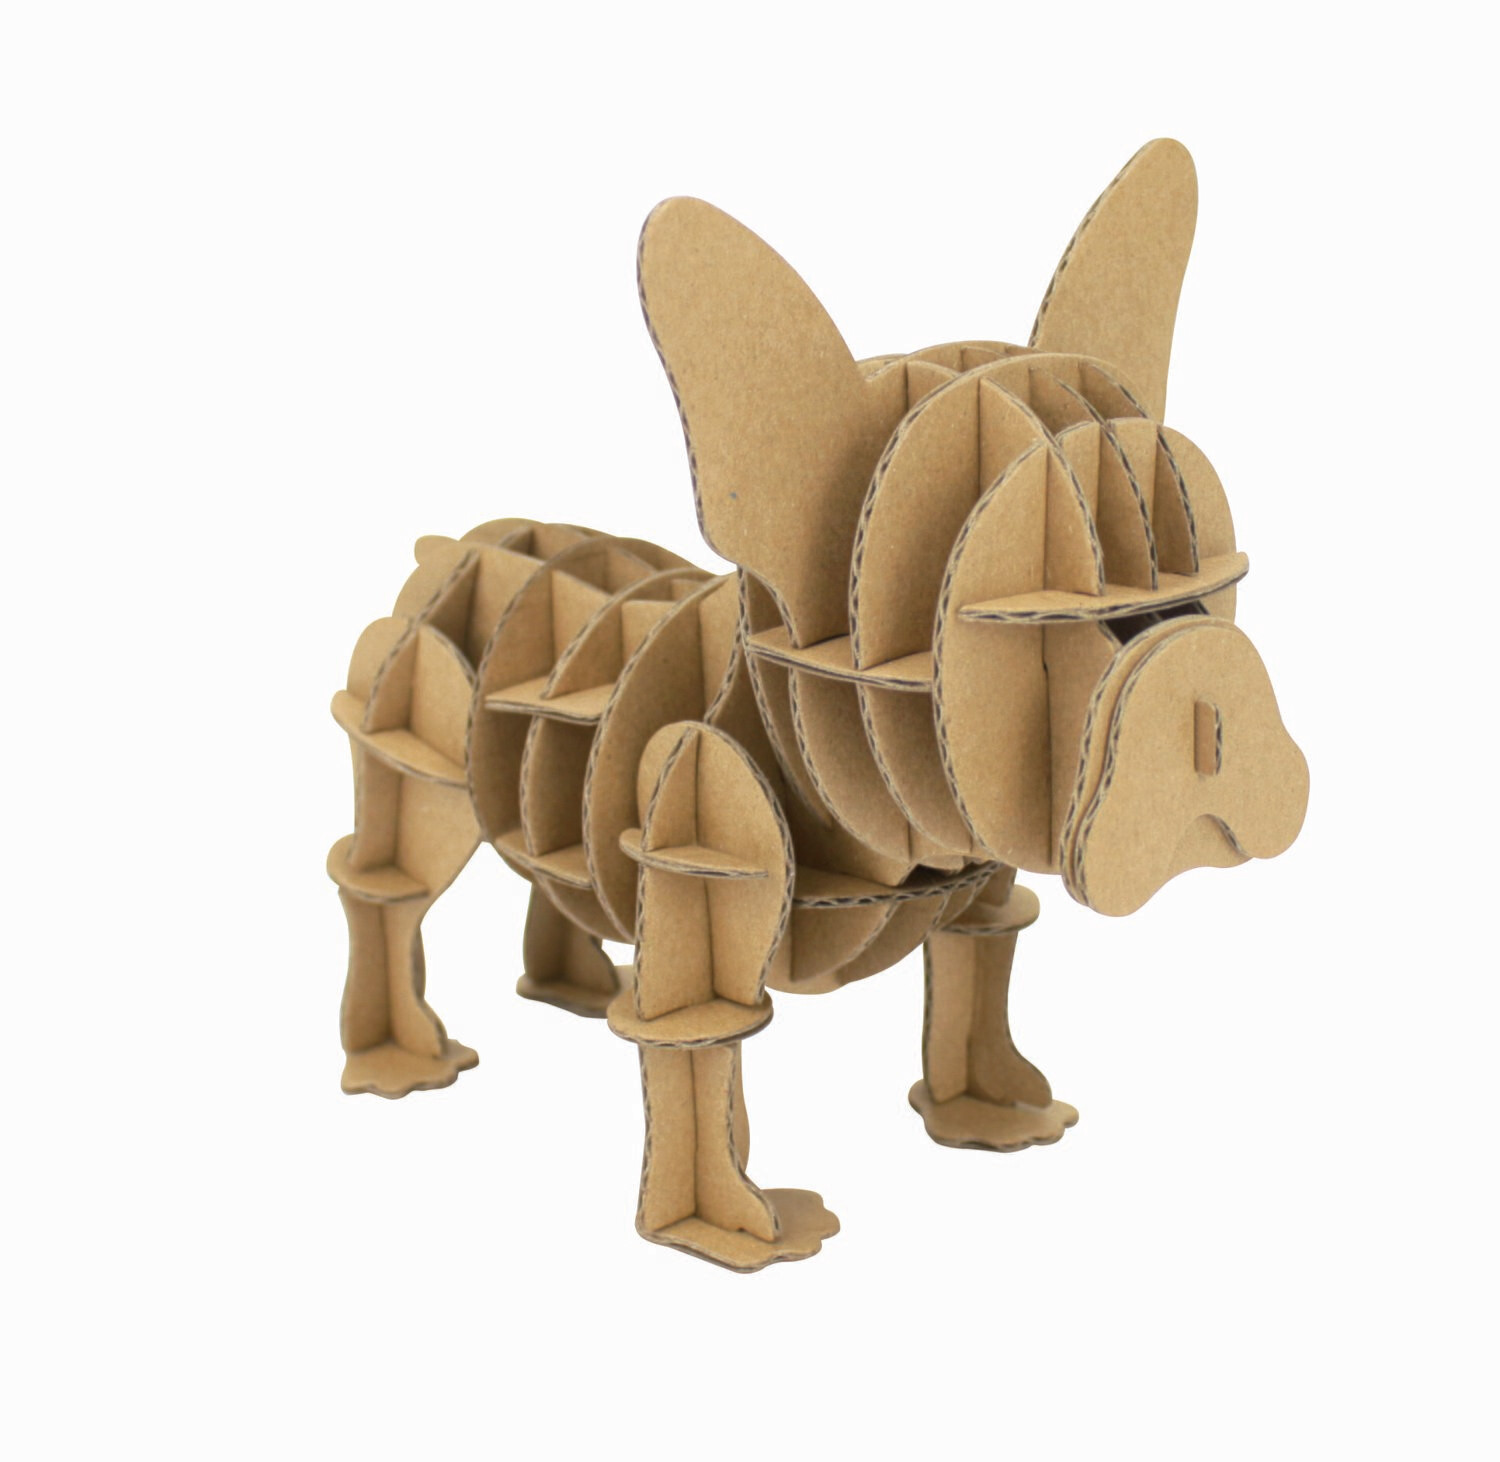 Chien Bulldog à assembler en carton (puzzle 3D)